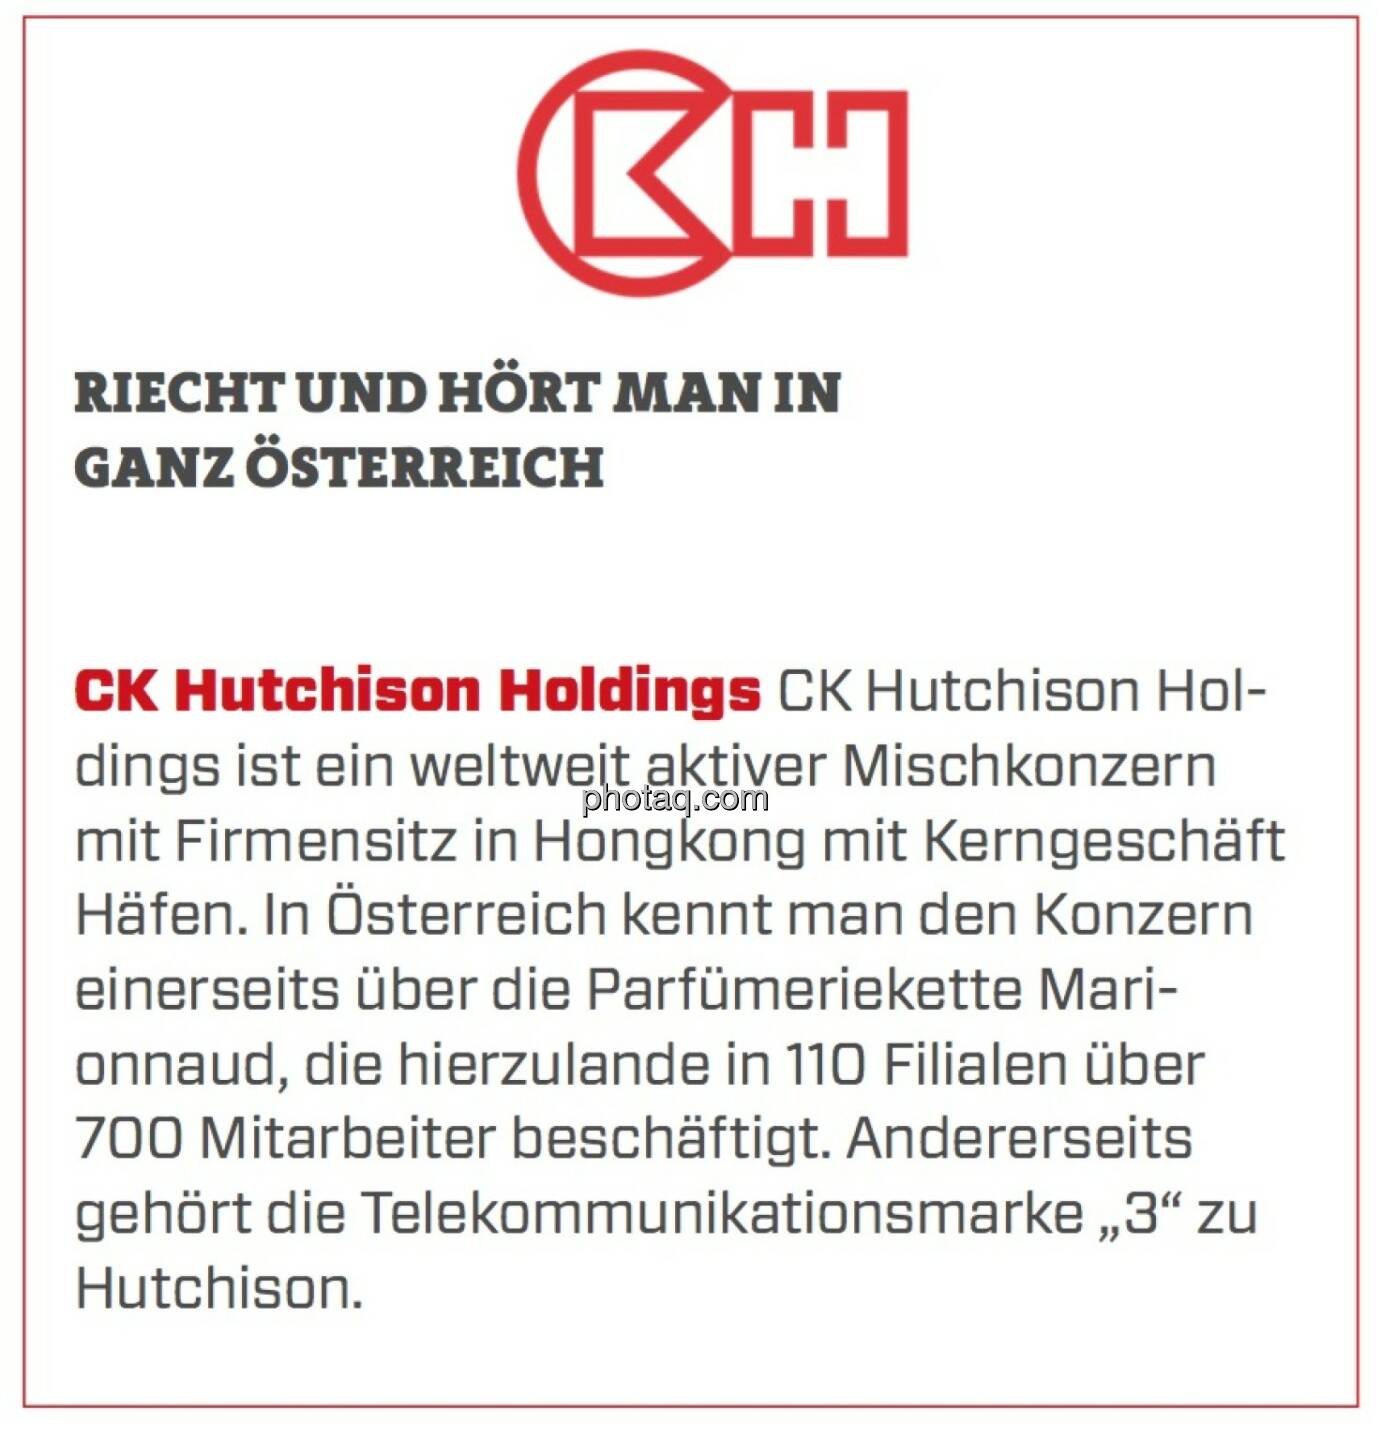 CK Hutchison Holdings - Riecht und hört man in ganz Österreich: CK Hutchison Holdings ist ein weltweit aktiver Mischkonzern mit Firmensitz in Hongkong mit Kerngeschäft Häfen. In Österreich kennt man den Konzern einerseits über die Parfümeriekette Marionnaud, die hierzulande in 110 Filialen über 700 Mitarbeiter beschäftigt. Andererseits gehört die Telekommunikationsmarke „3“ zu Hutchison. 